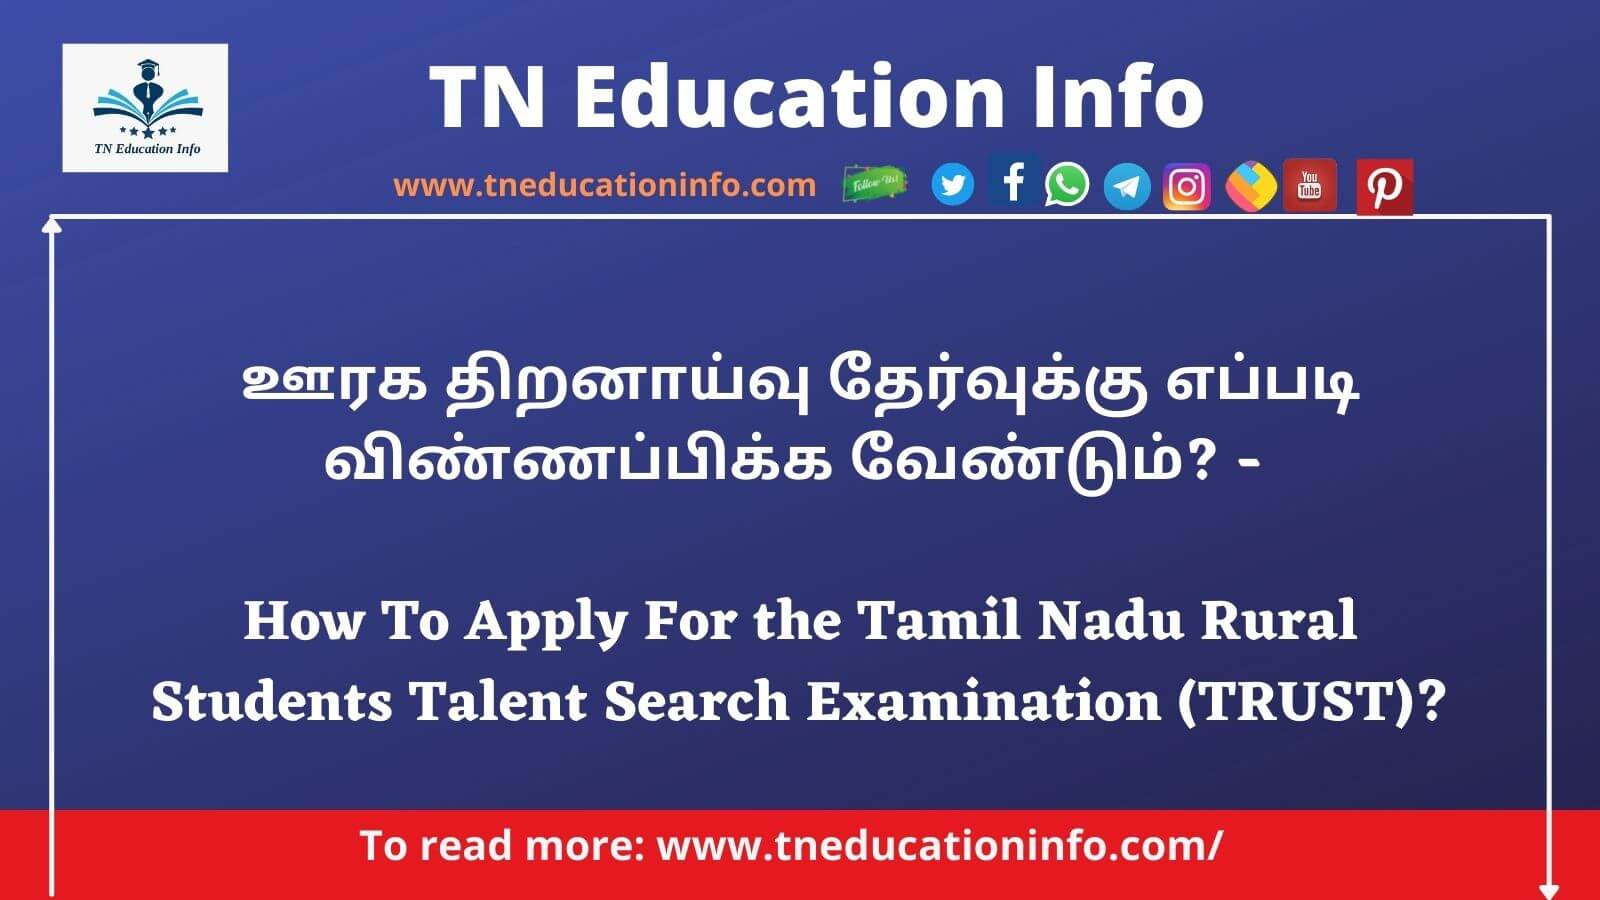 TRUST Exam in Tamil